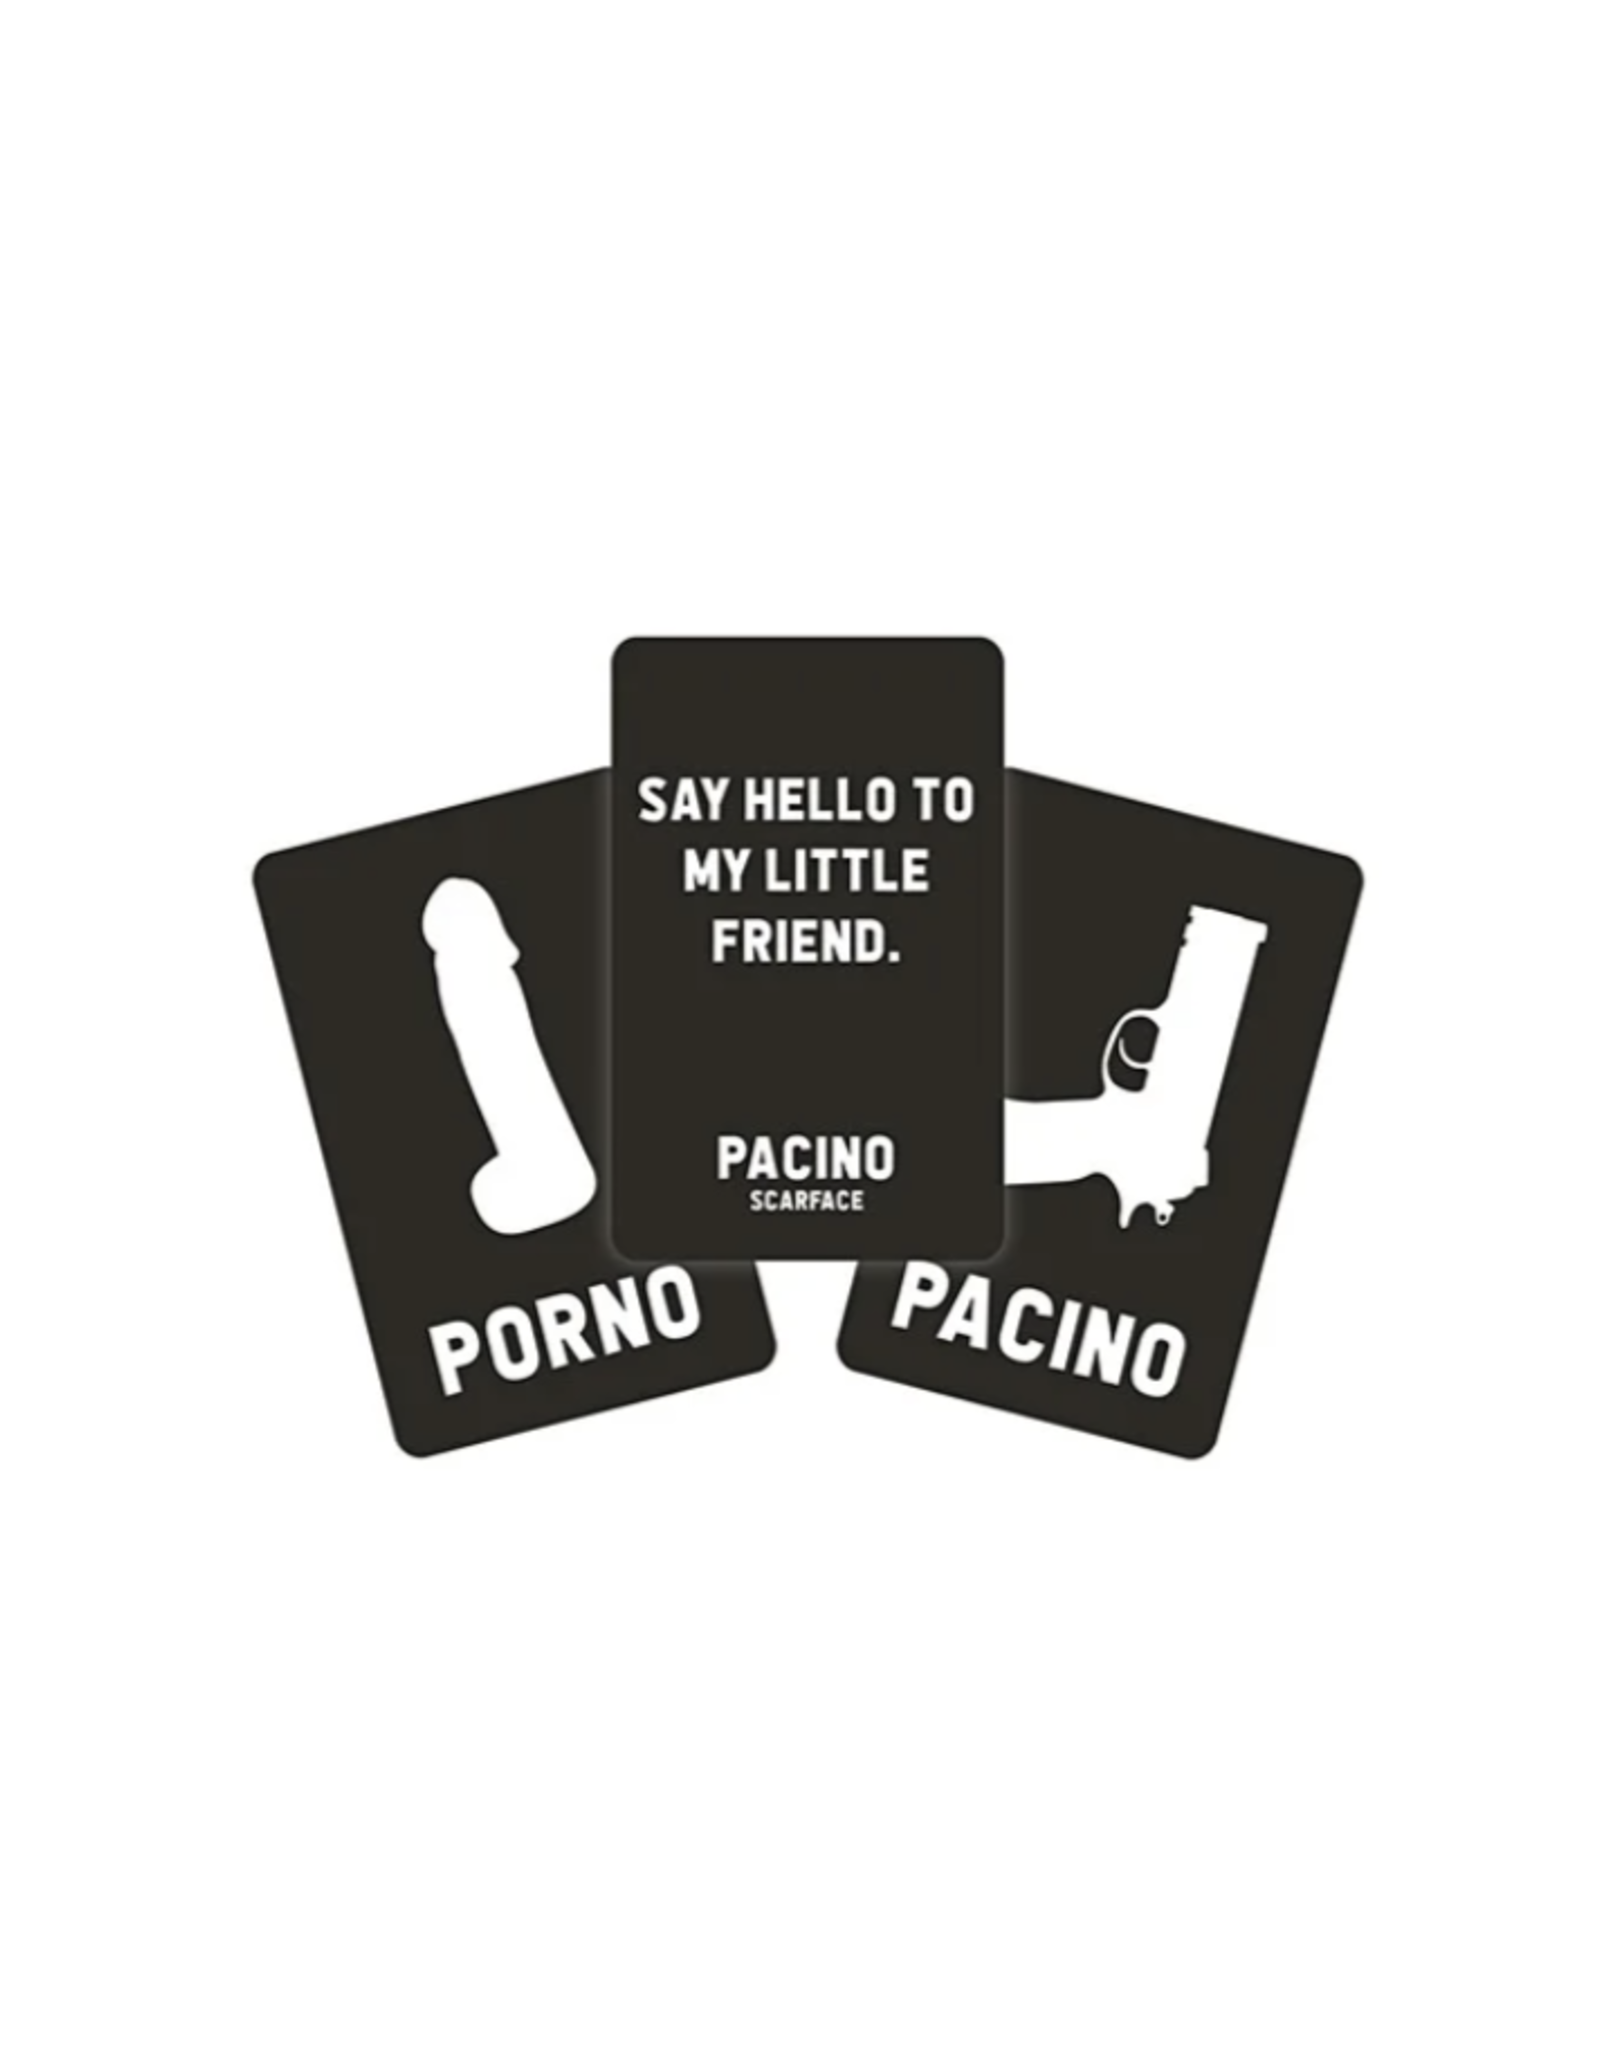 Porno or Pacino Card Game